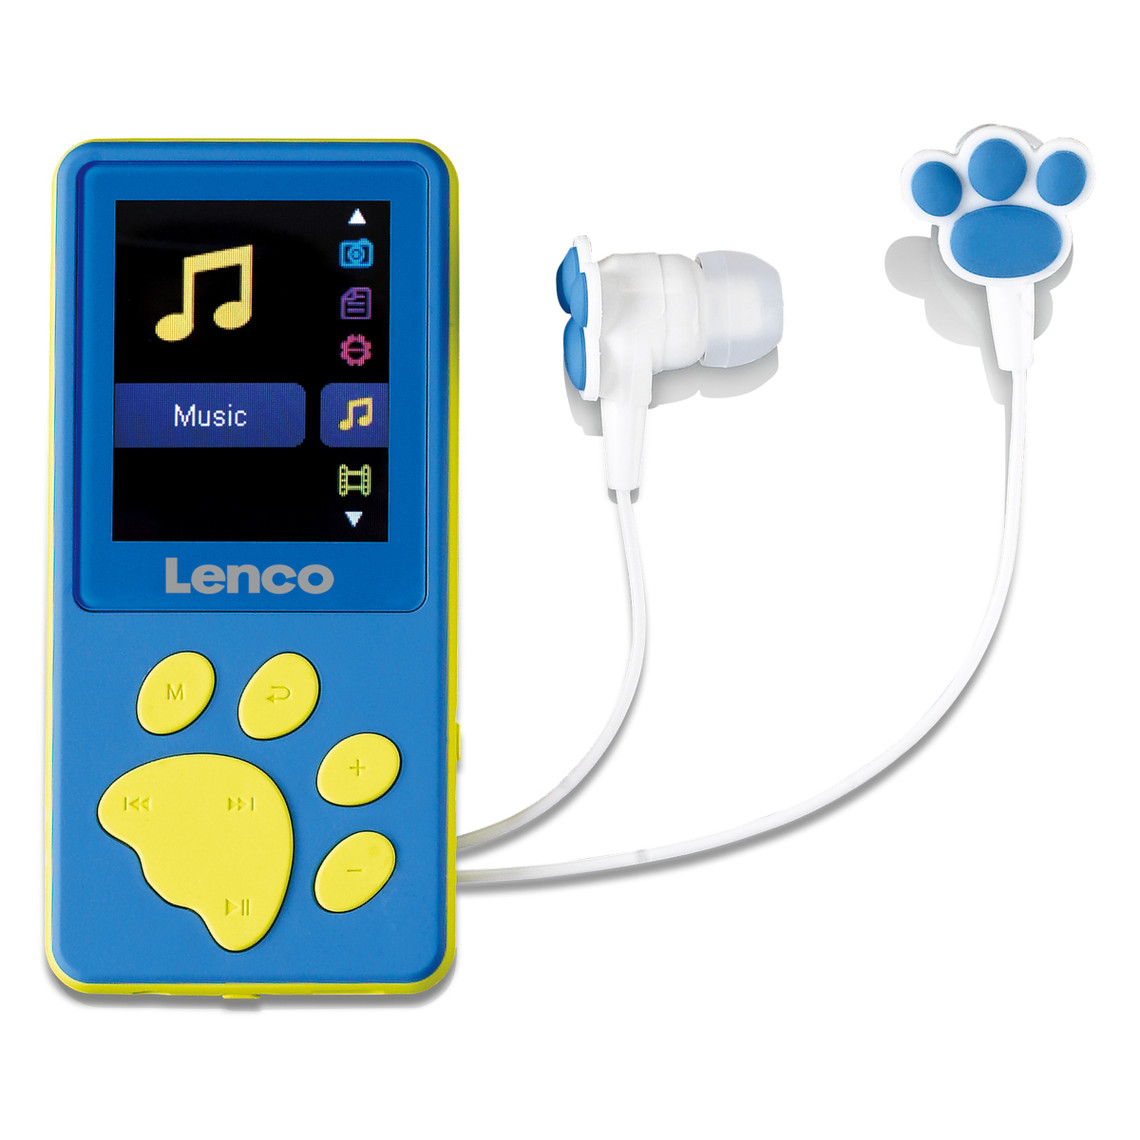 Lecteur MP3 / MP4 Lenco Lecteur MP3/MP4 avec mémoire de 8 Go Xemio-560BU Bleu